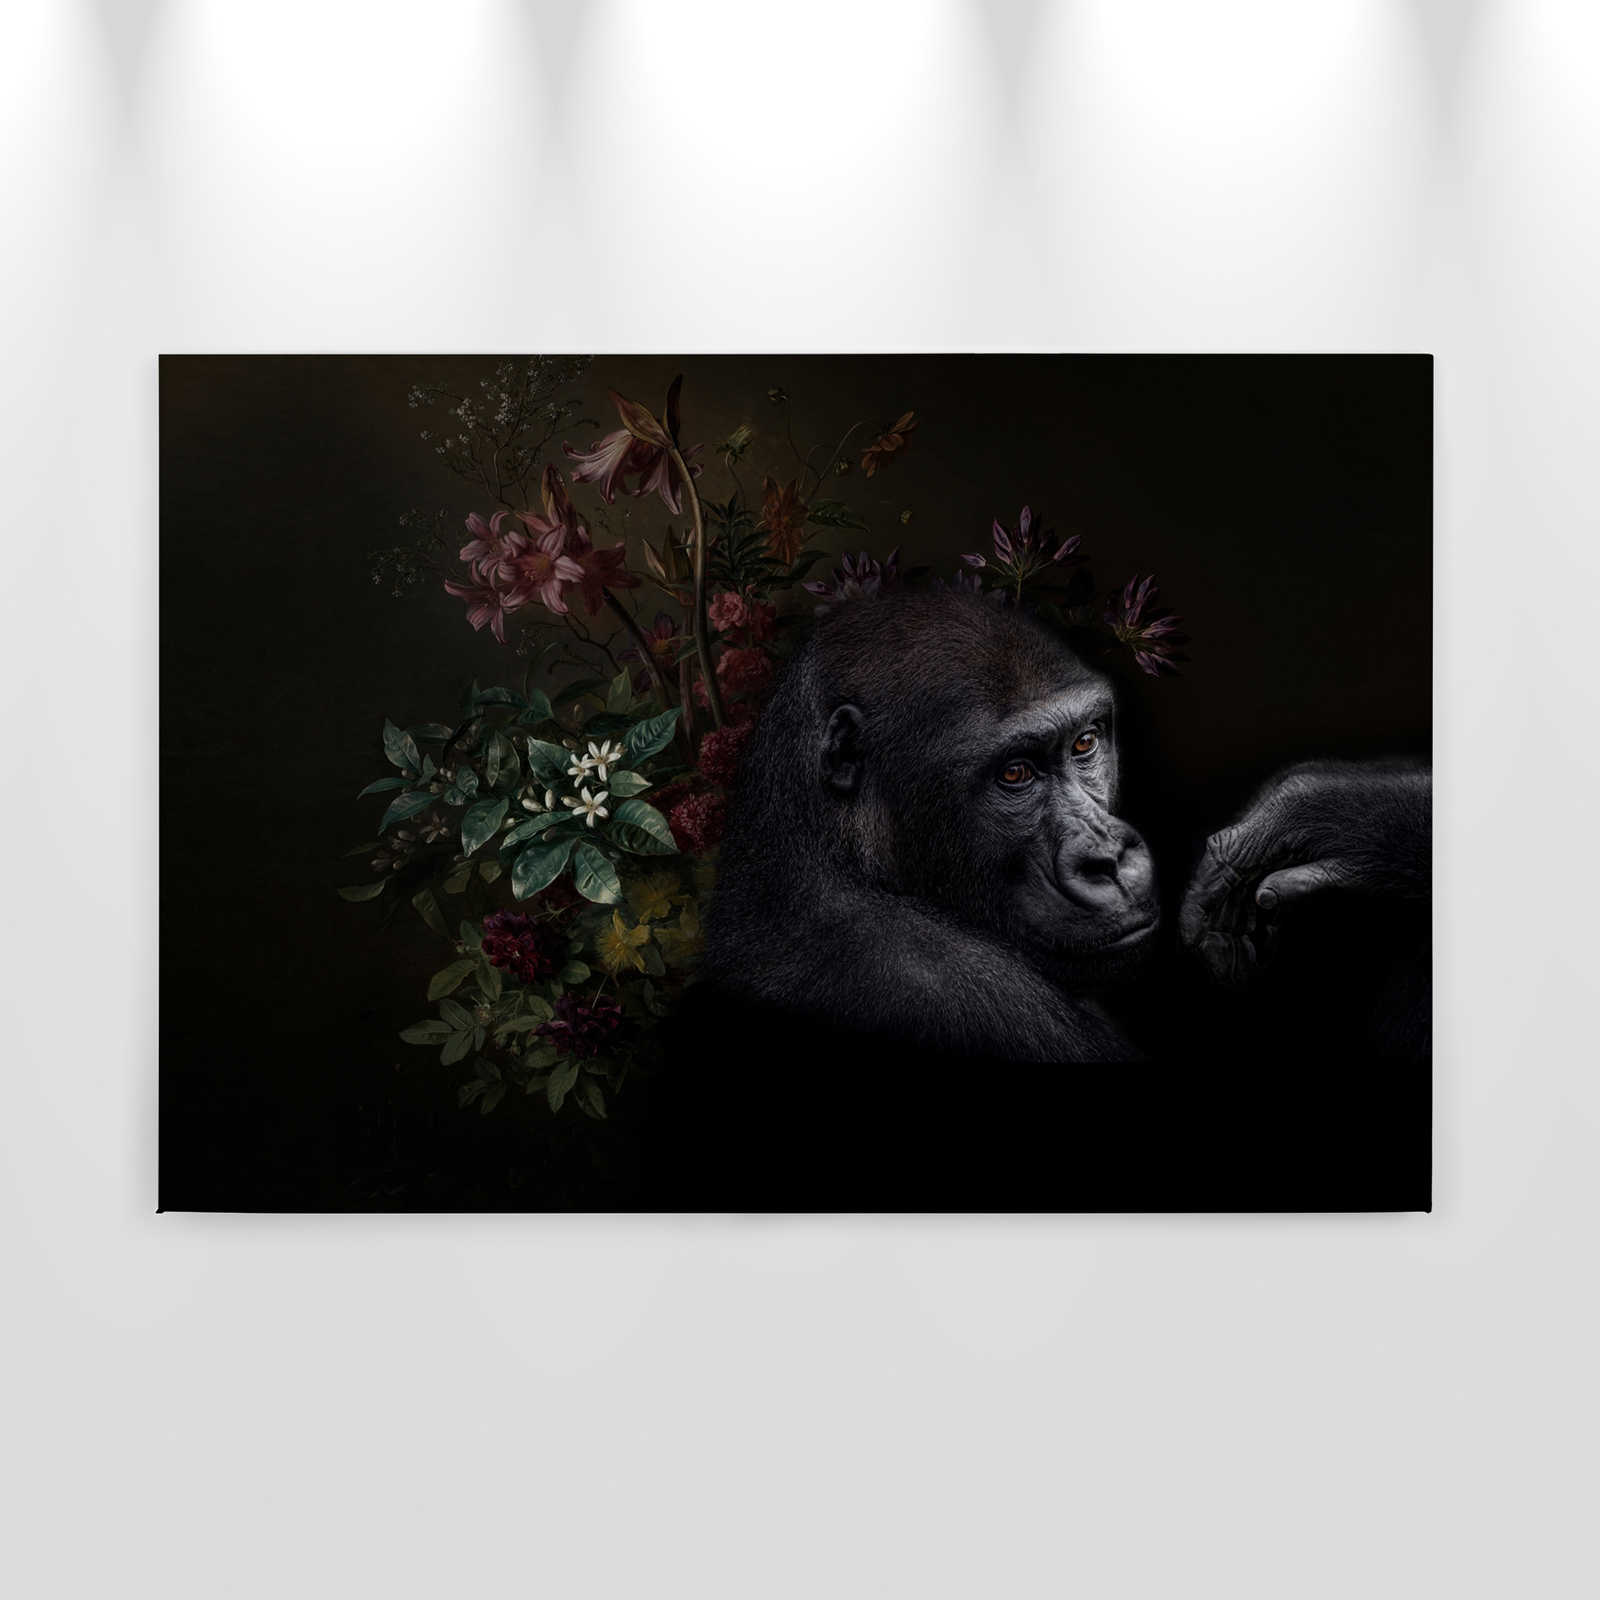             Toile Portrait de gorille avec fleurs - 0,90 m x 0,60 m
        